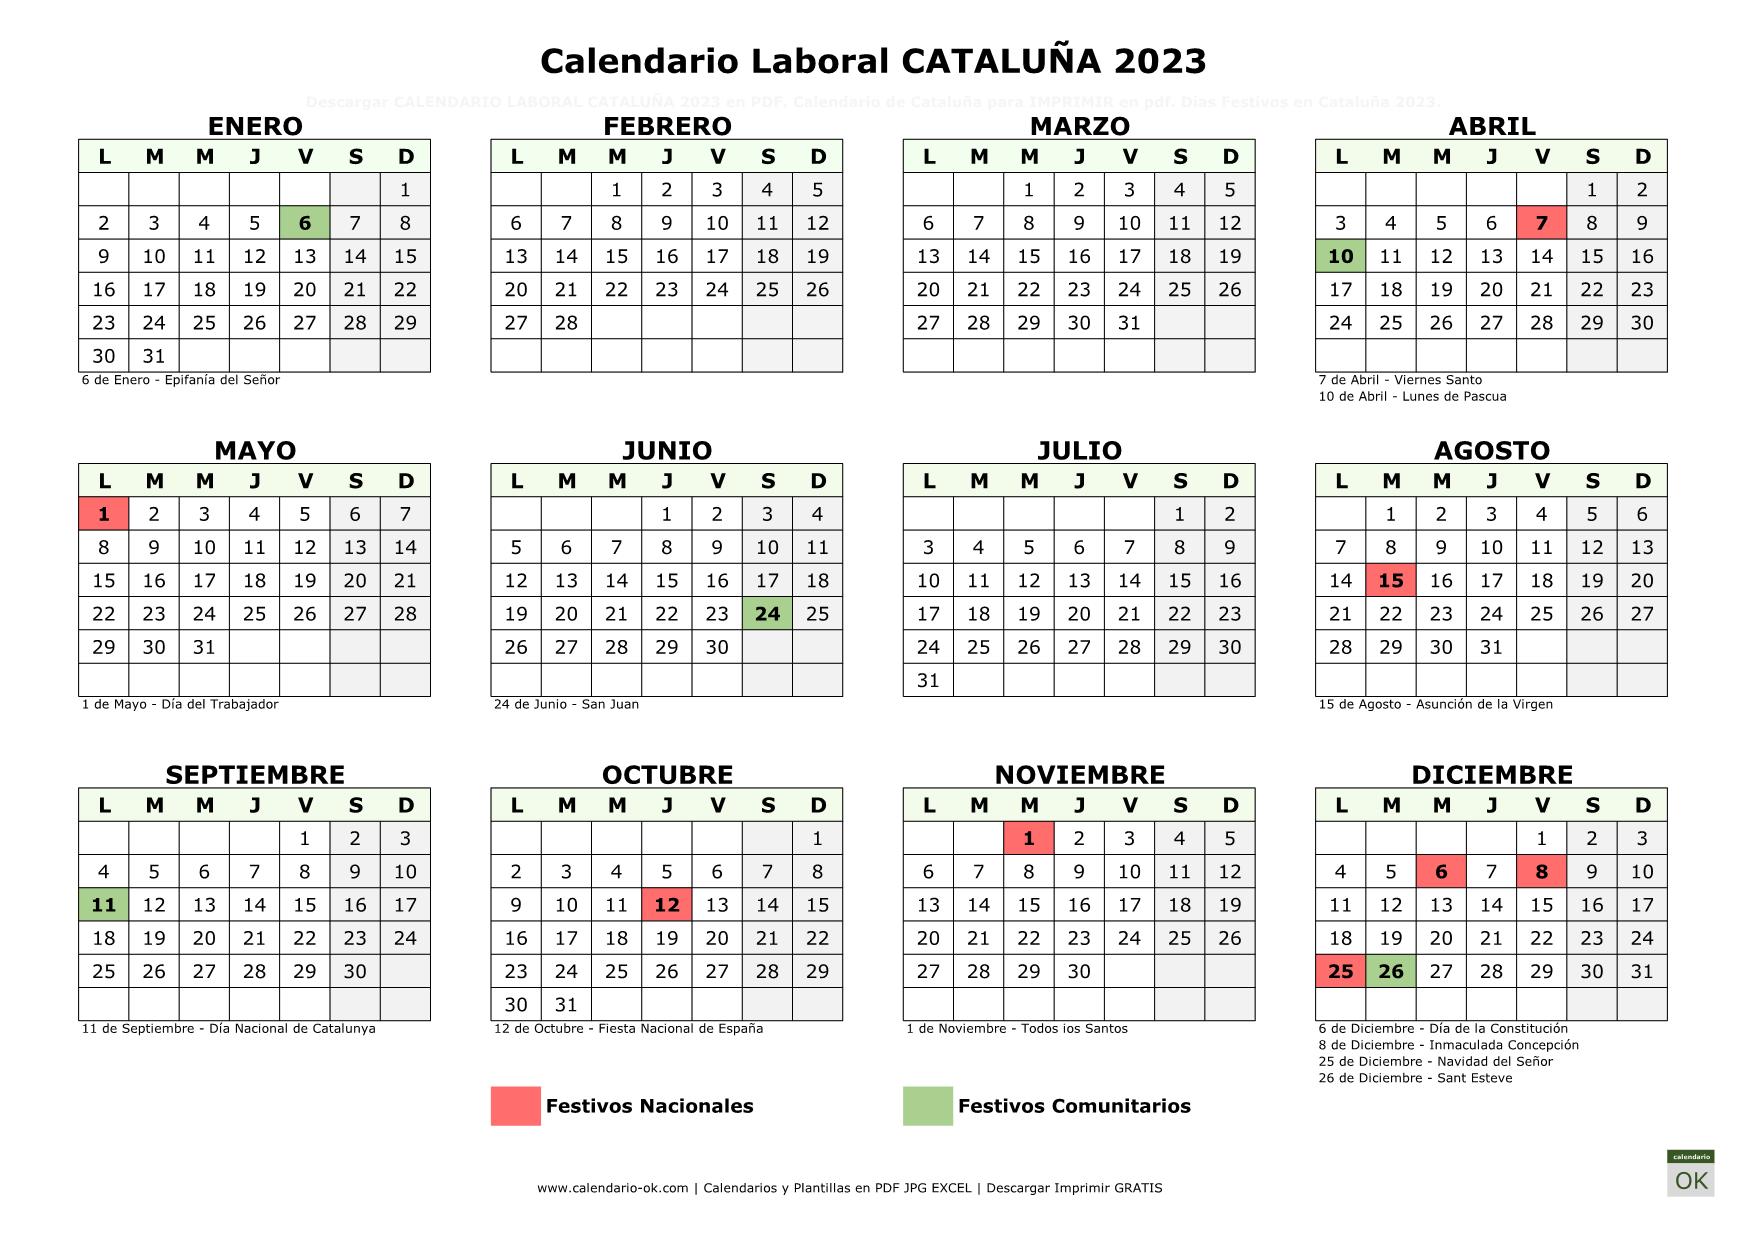 Calendario Laboral CATALUÑA 2023 horizontal